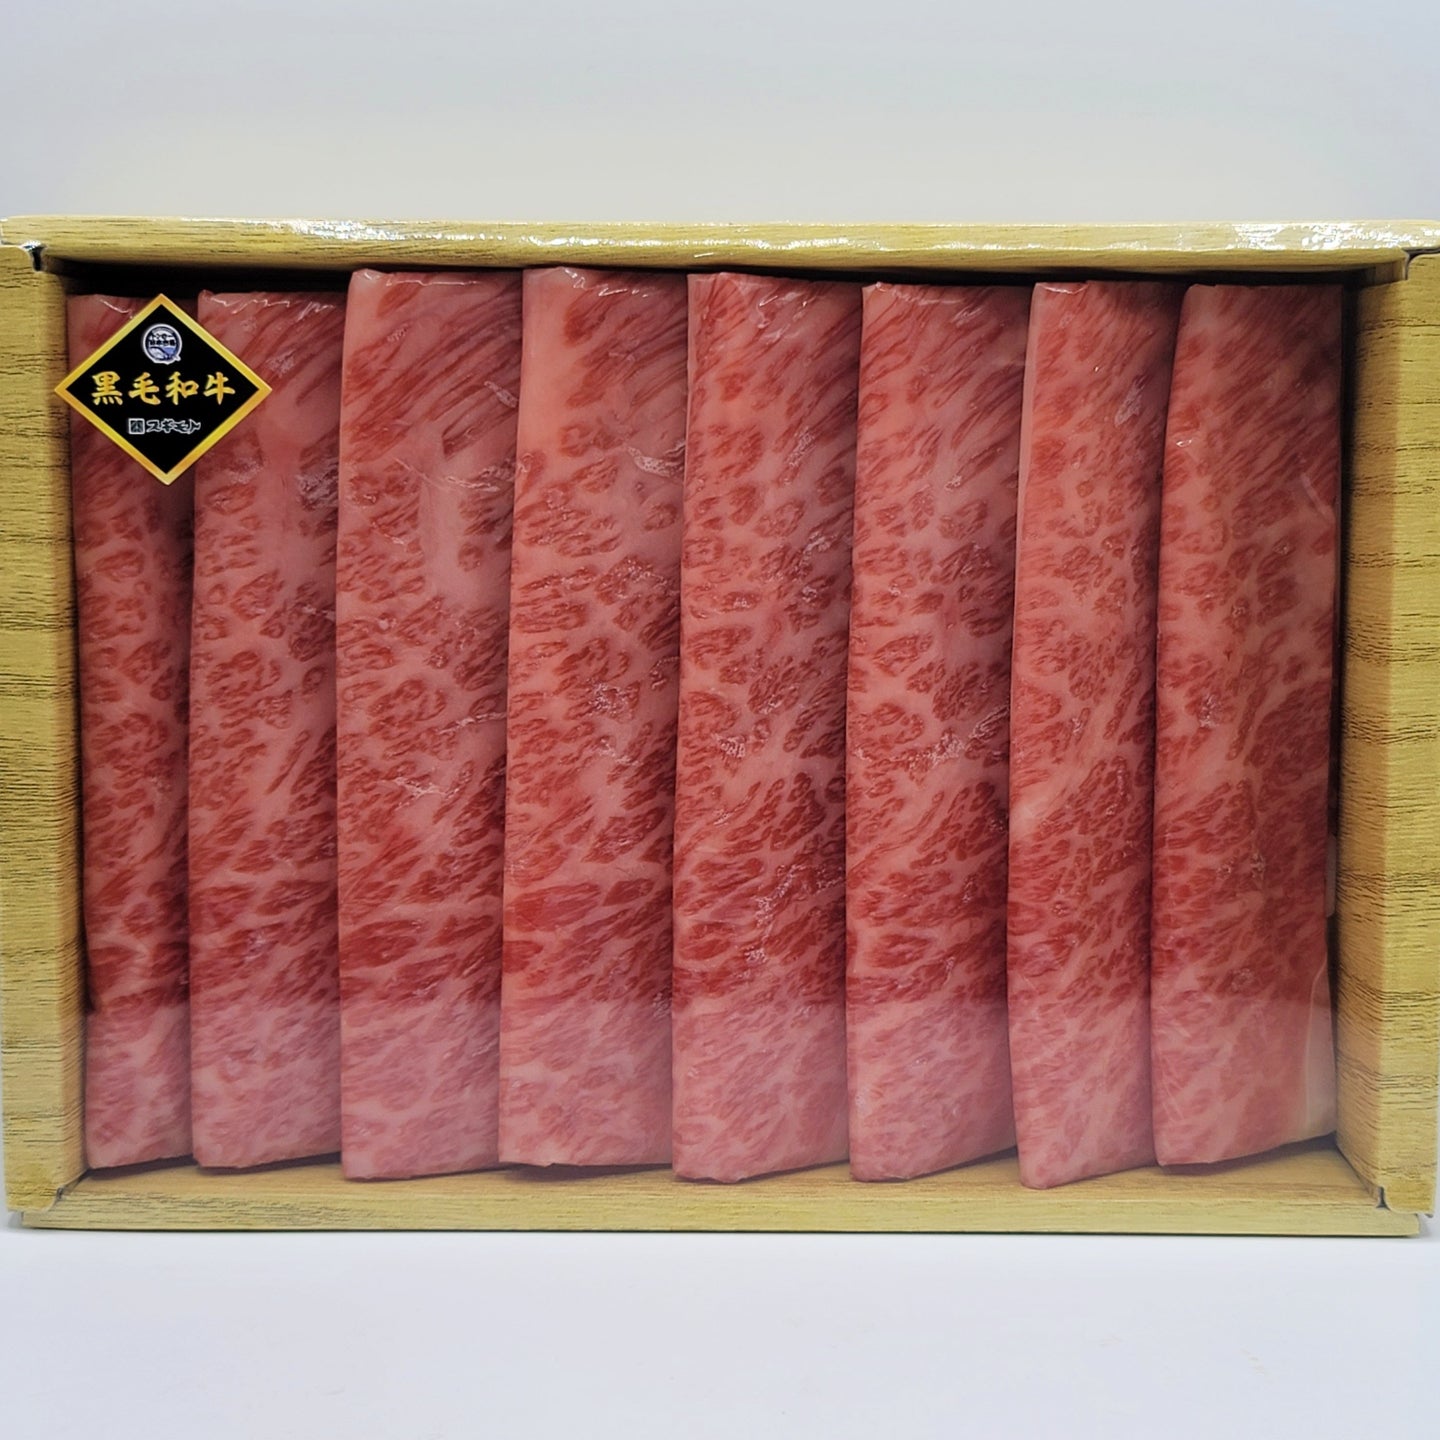 Wagyu Chuck Eye Roll Silce for Sukiyaki 400g (Gift Box)